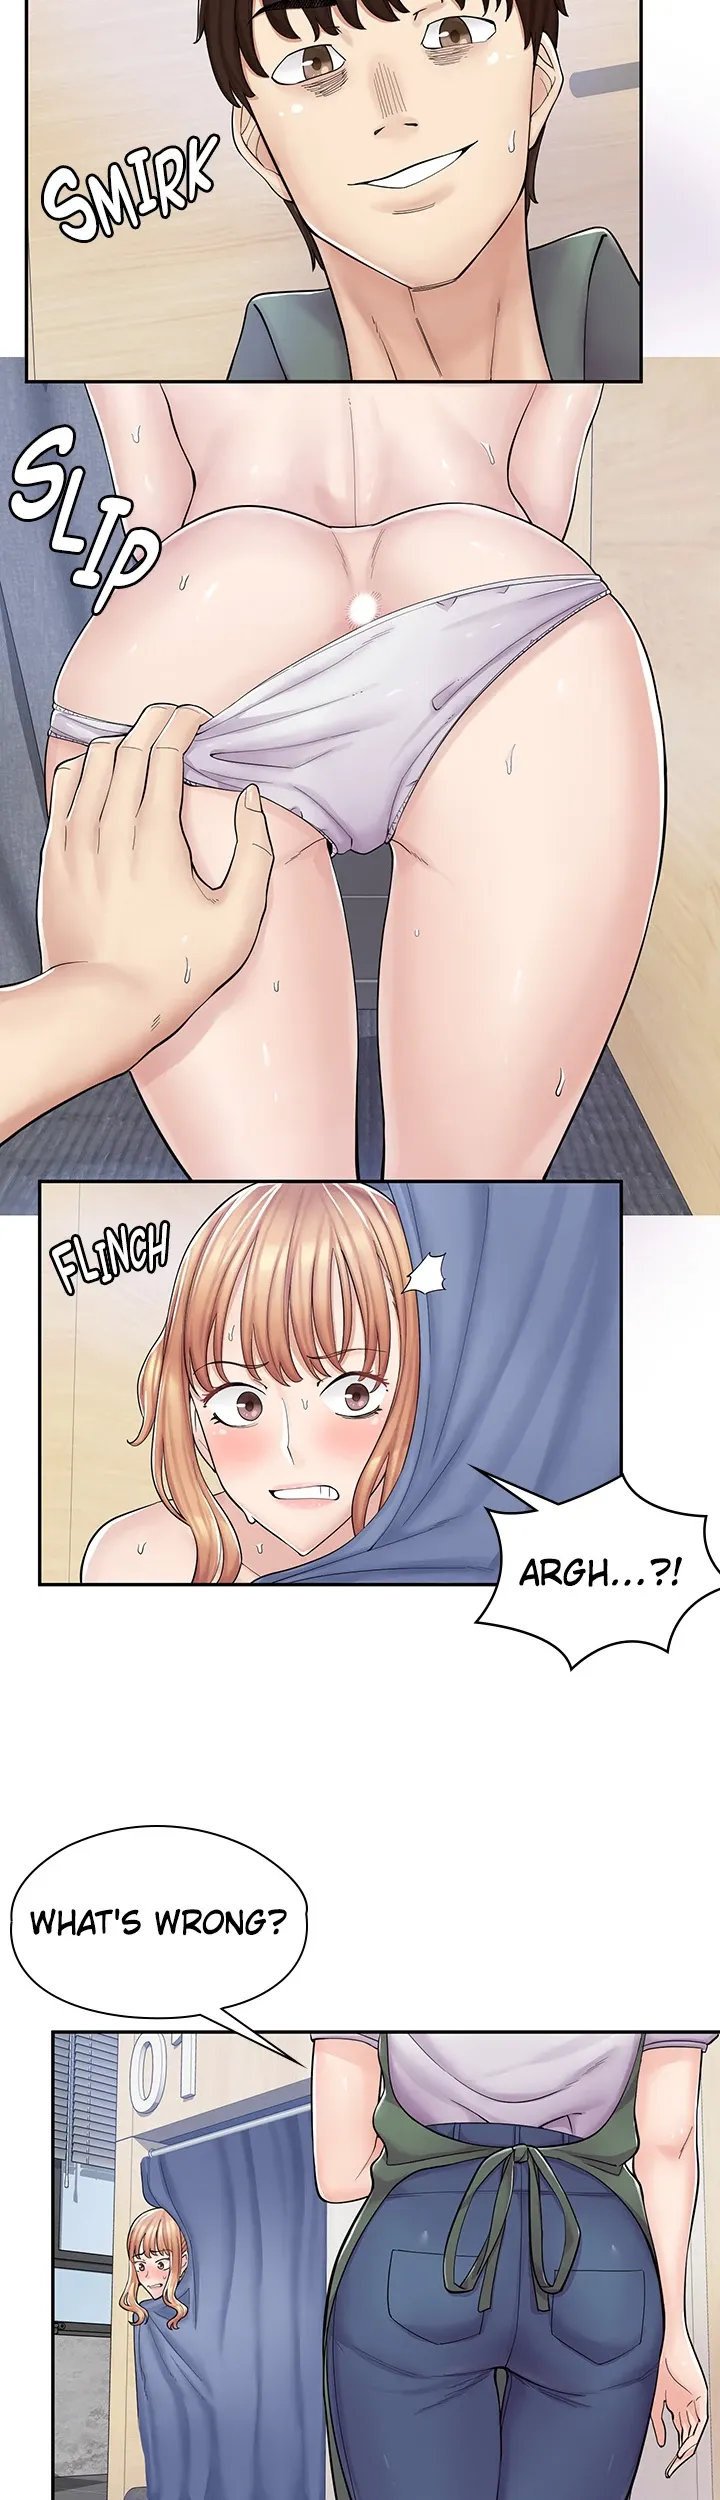 erotic-manga-cafe-girls-chap-4-13